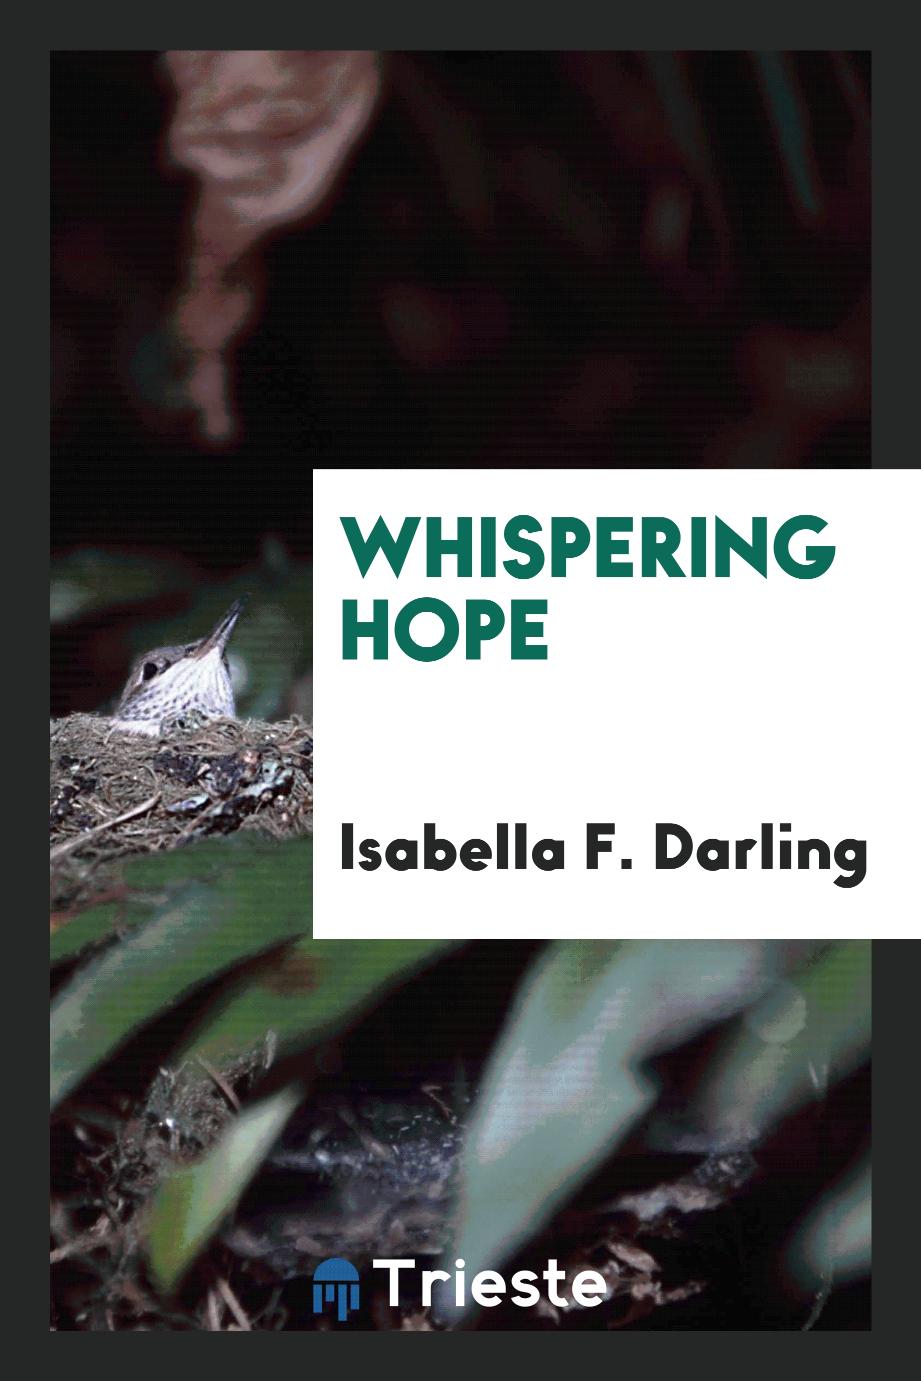 Whispering hope